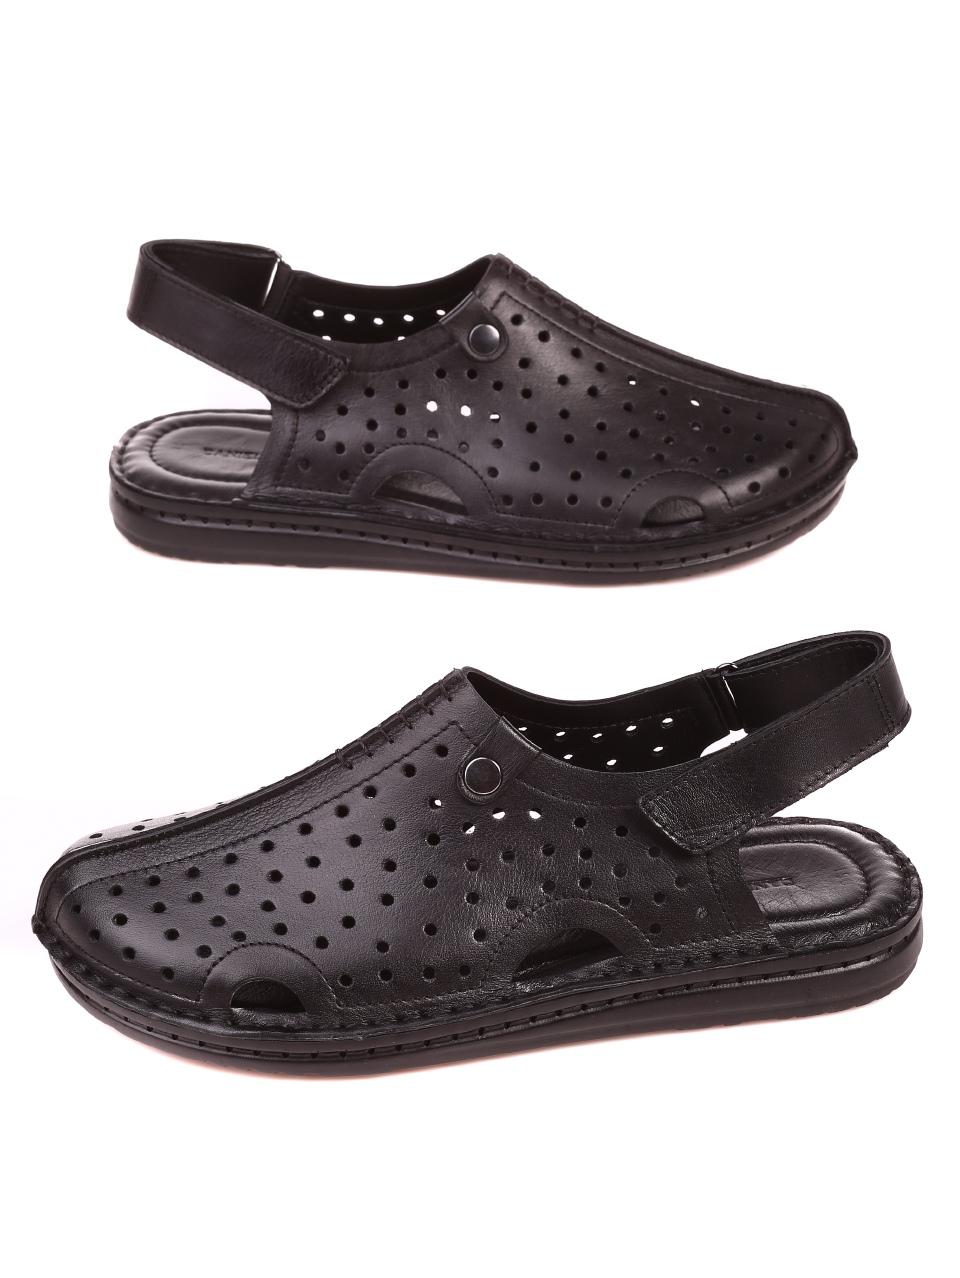 Ежедневни мъжки сандали от естествена кожа 8AT-21333 black